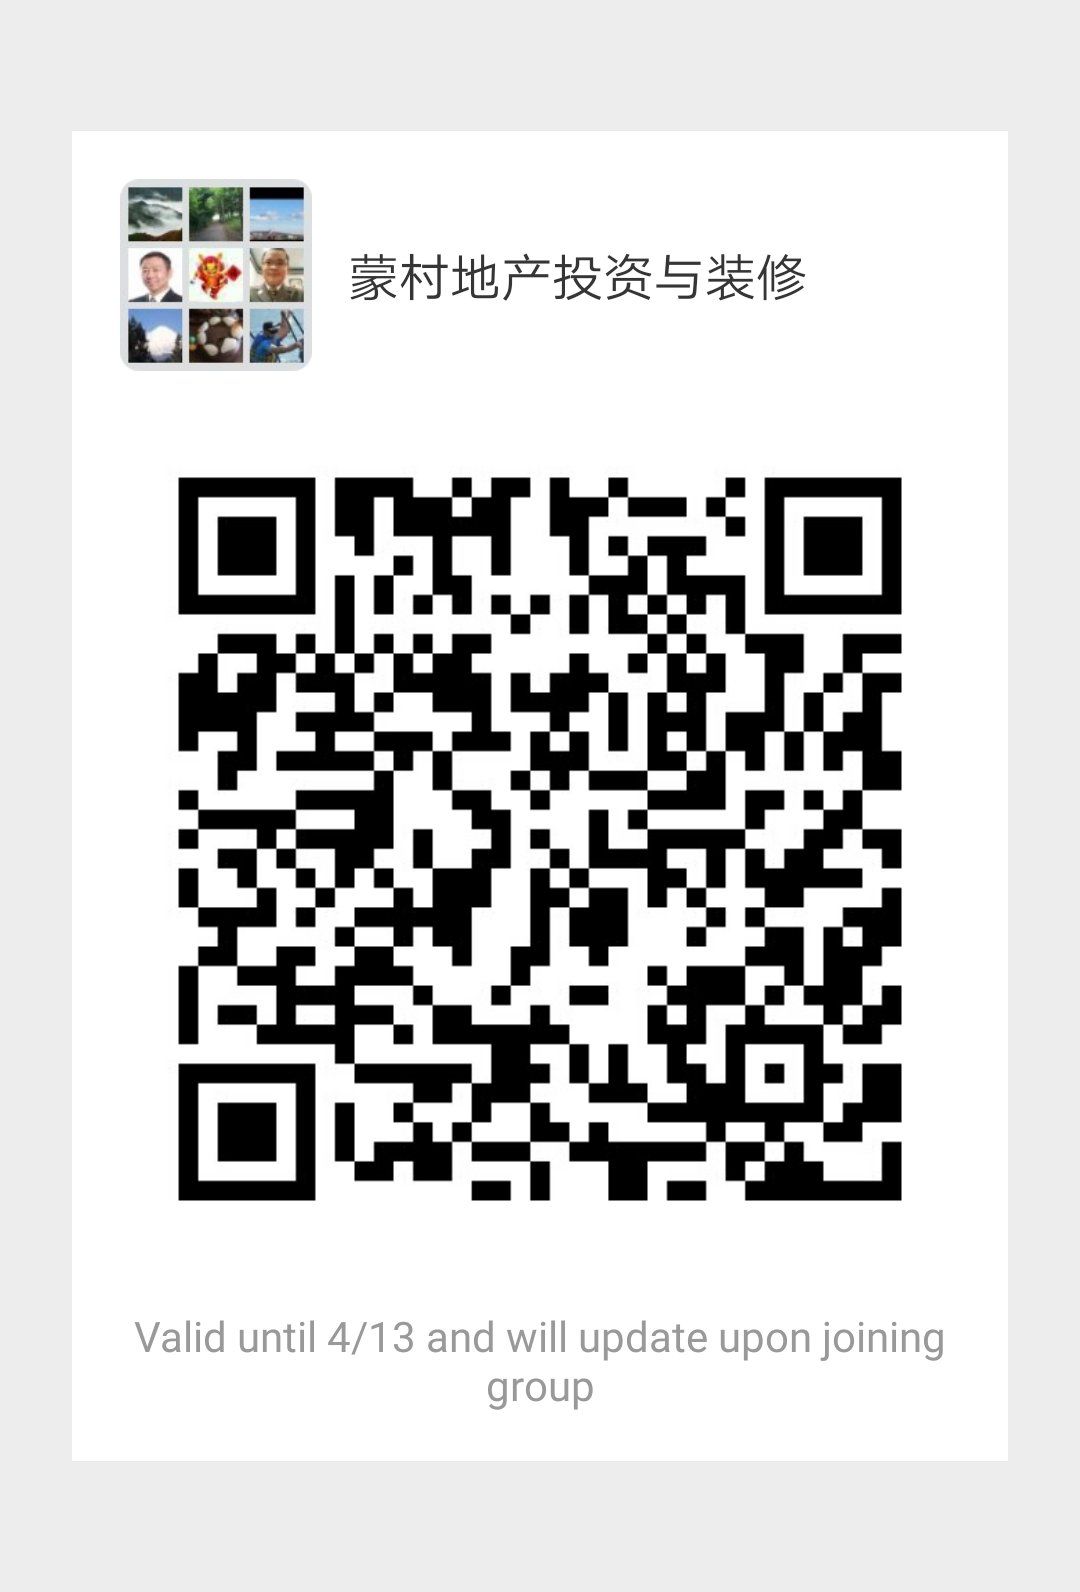 WeChat Image_20190407062453.jpg